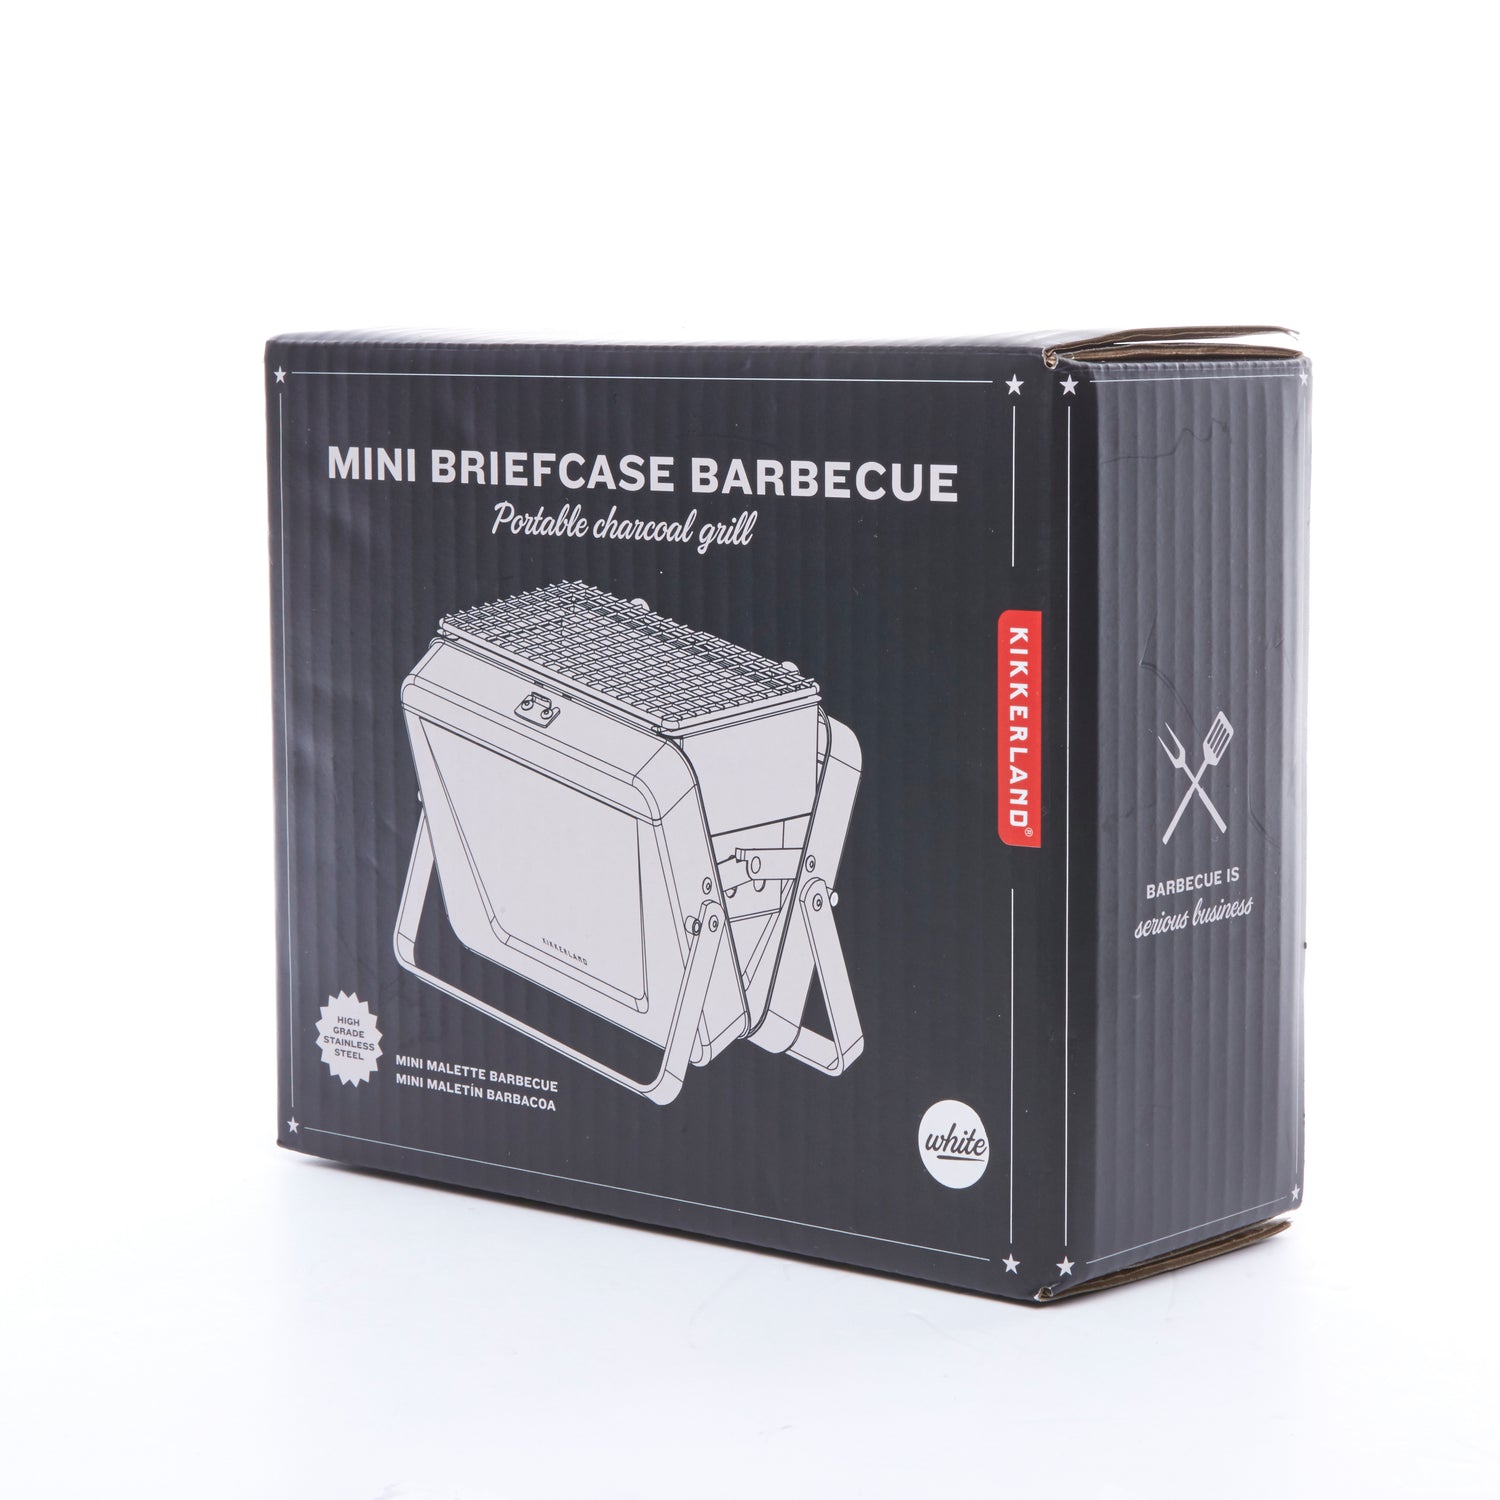 MIni Briefcase Barbecue